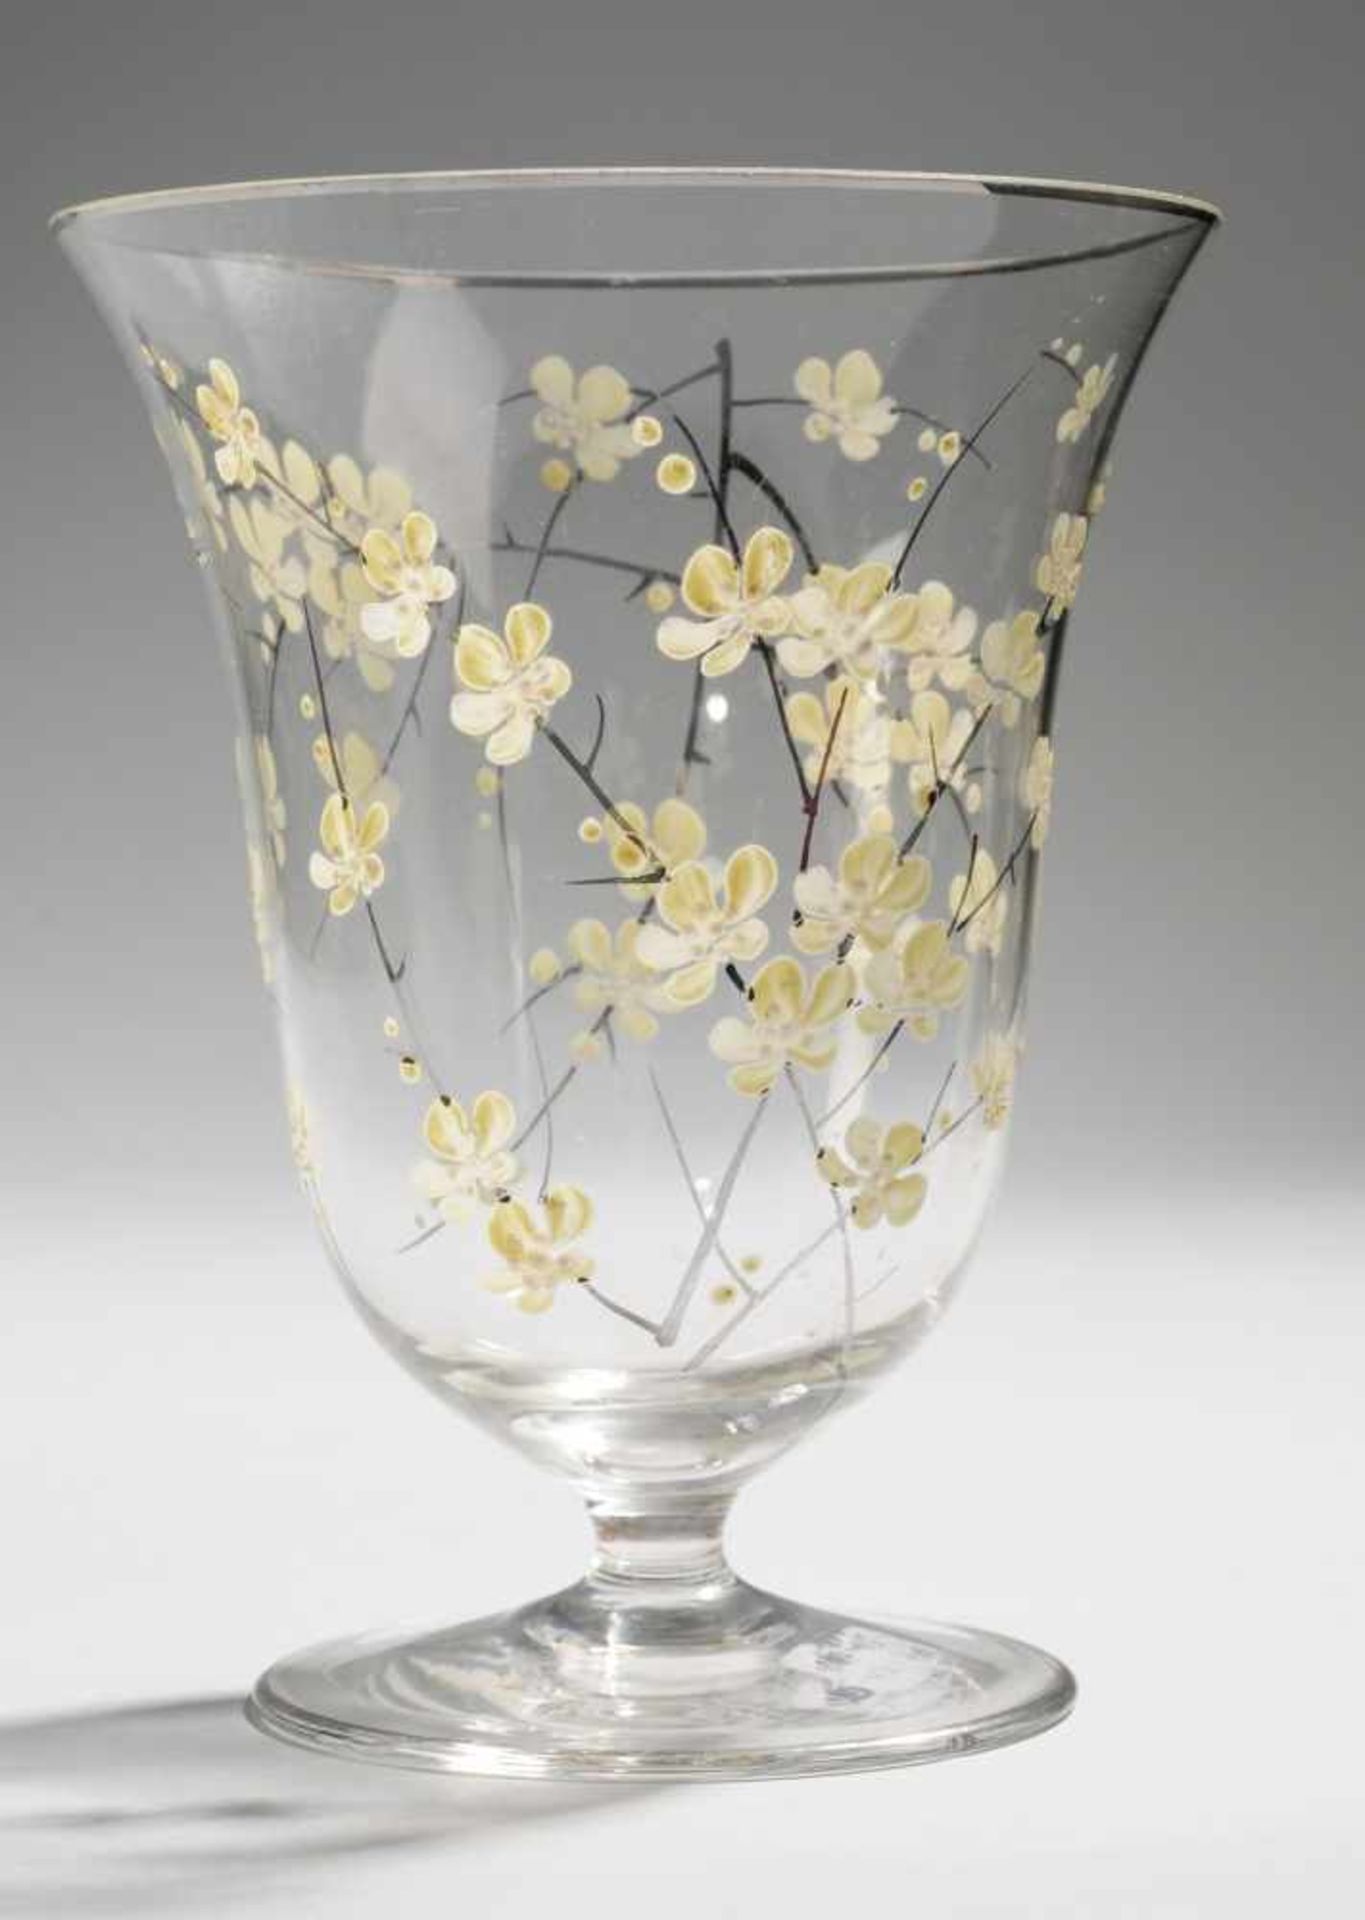 Fußvase mit PrunusdekorFarbloses Glas. Formgeblasen. Scheibenfuß u. kurzer Schaft. Gestreckter